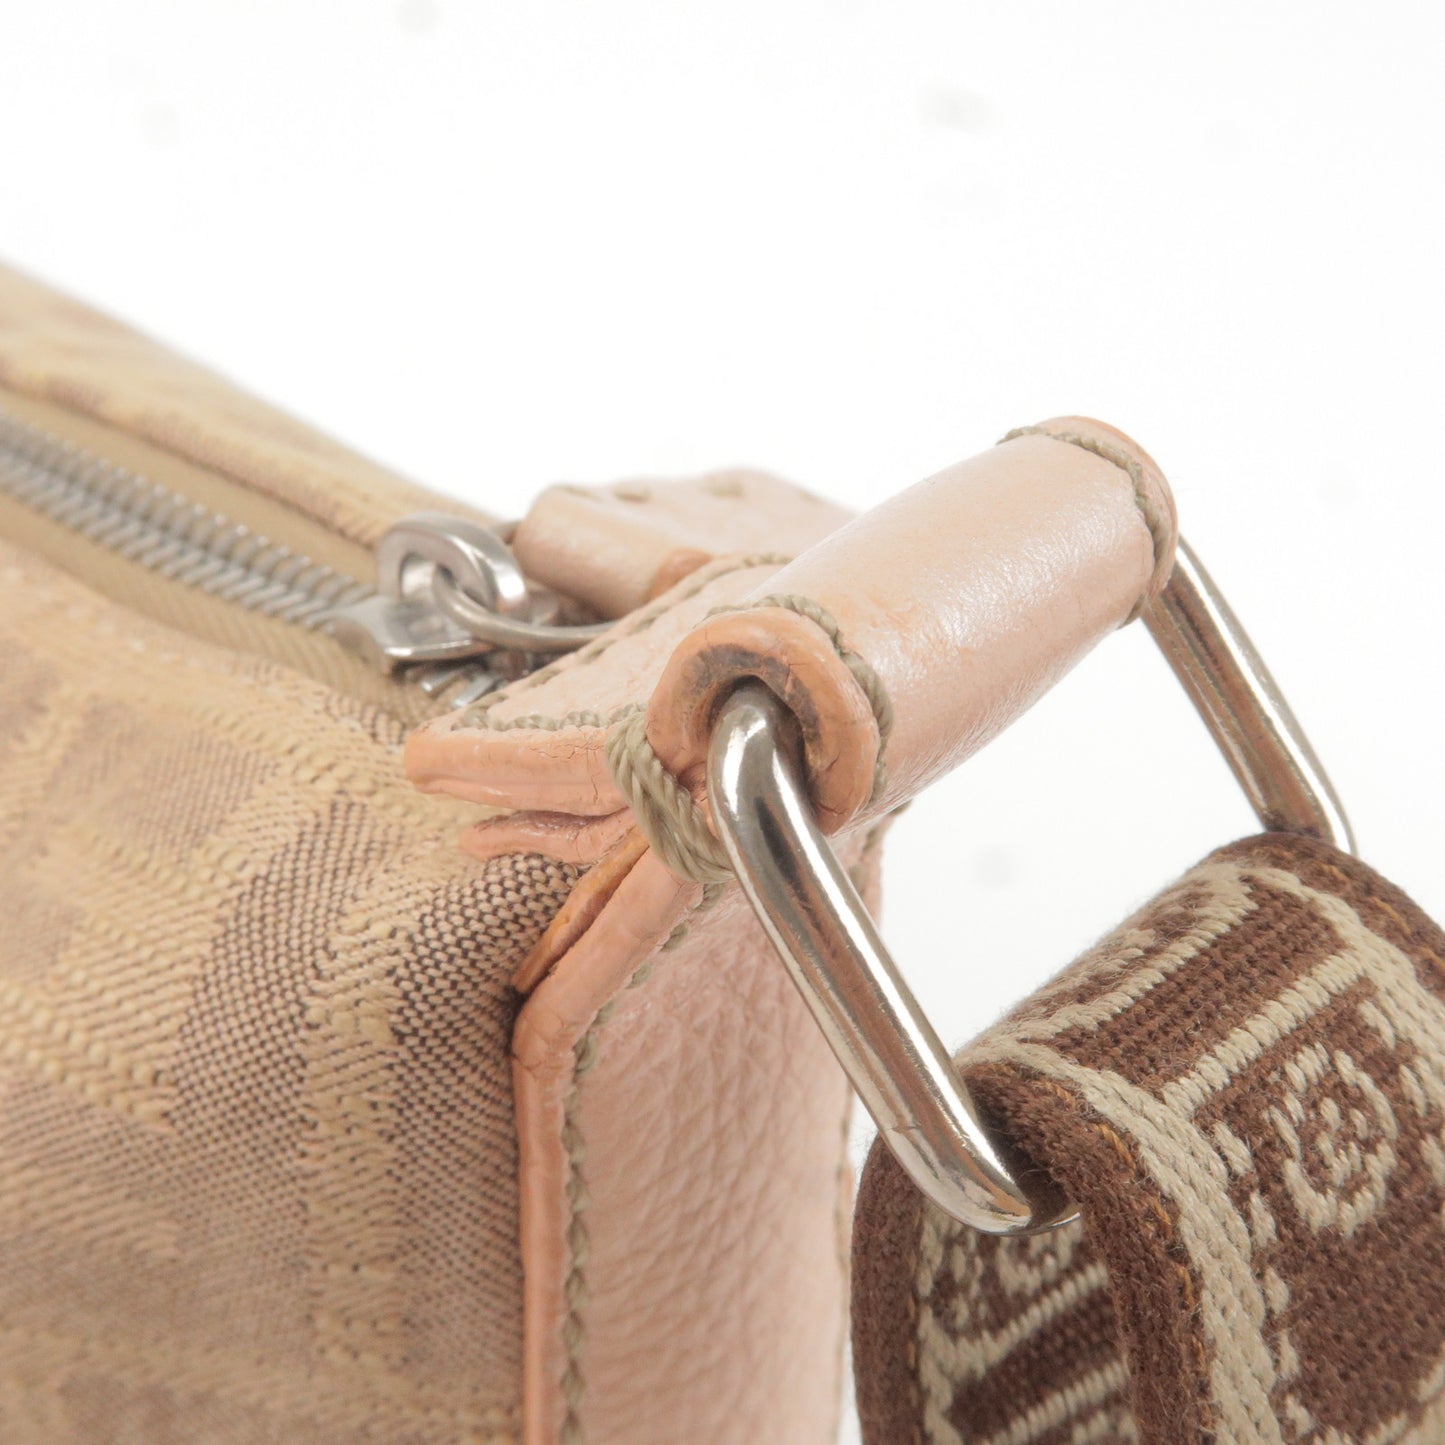 Fendi Zucca Selleria Canvas Leather Shoulder Bag Pink 8BT093